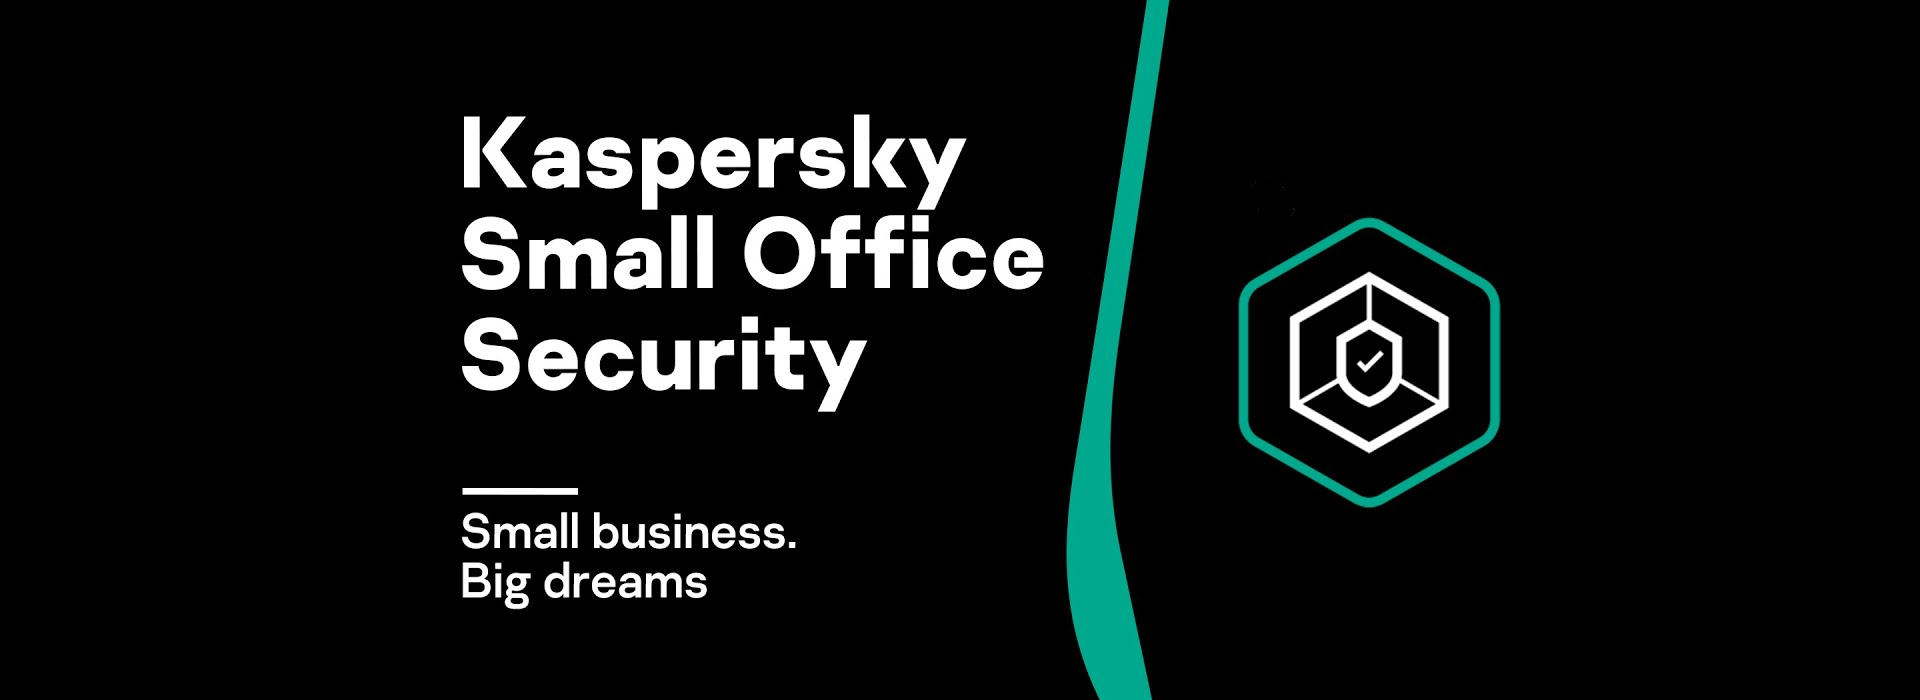 Giới thiệu Kaspersky Small Office Security bản quyền - Bảo mật tối ưu cho các doanh nghiệp nhỏ